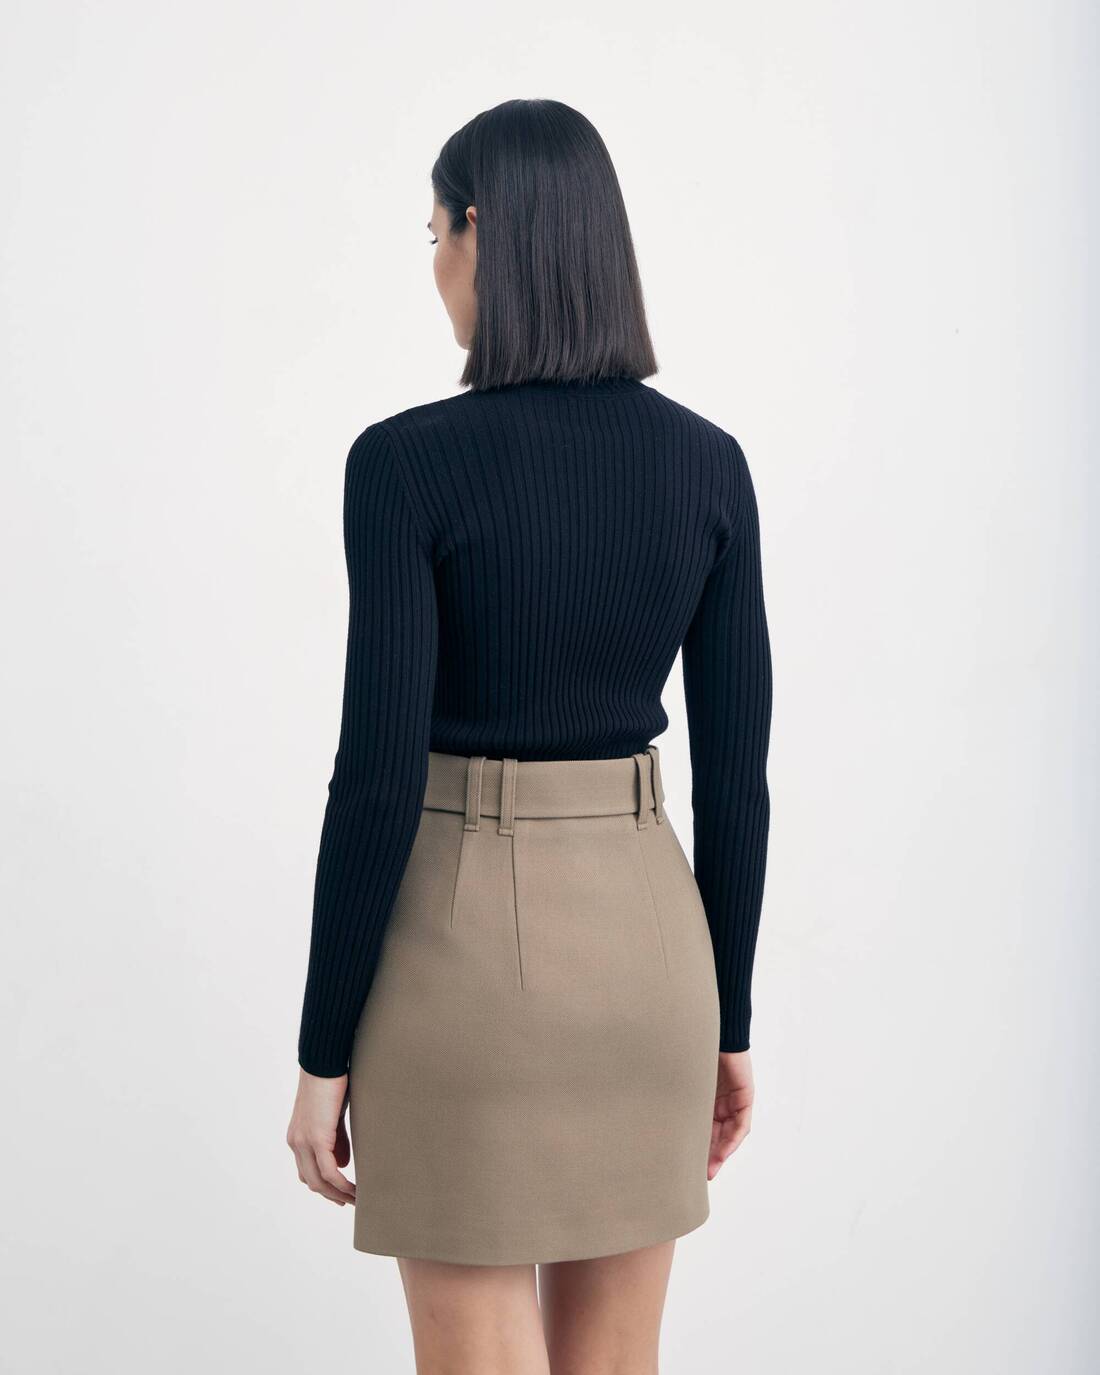 Belted mini skirt